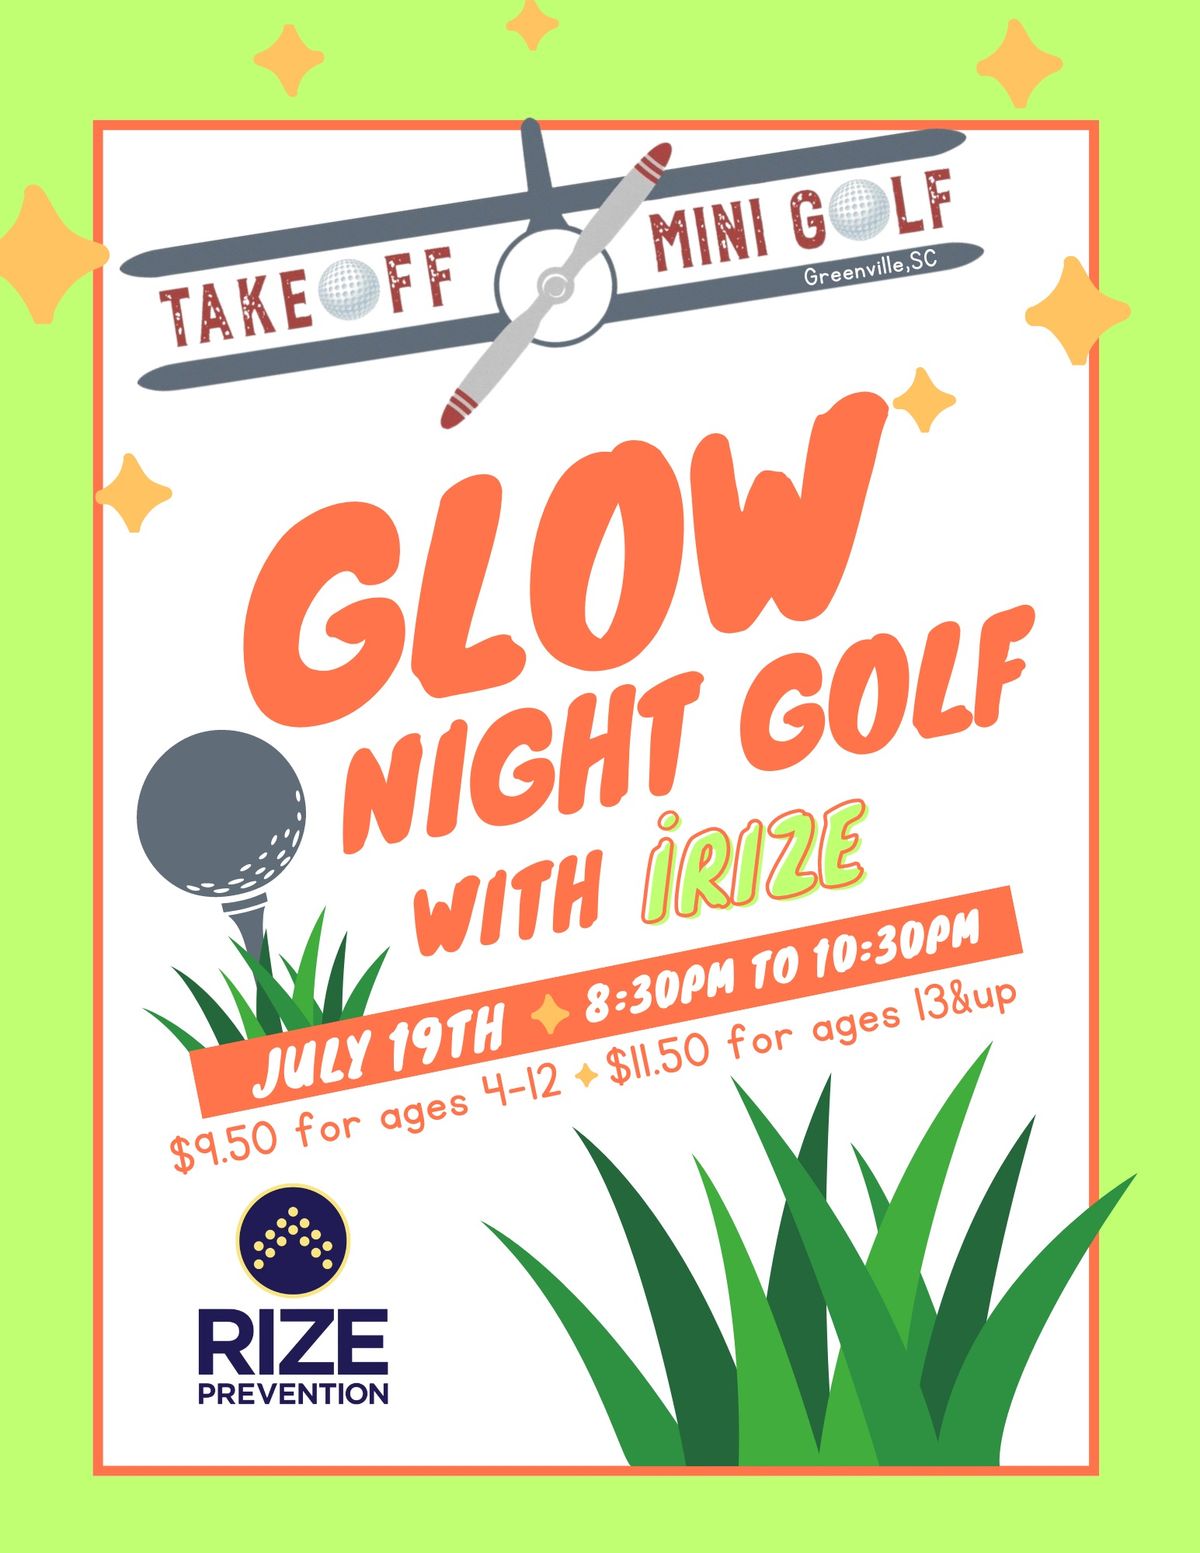 Glow Night Golf with iRIZE